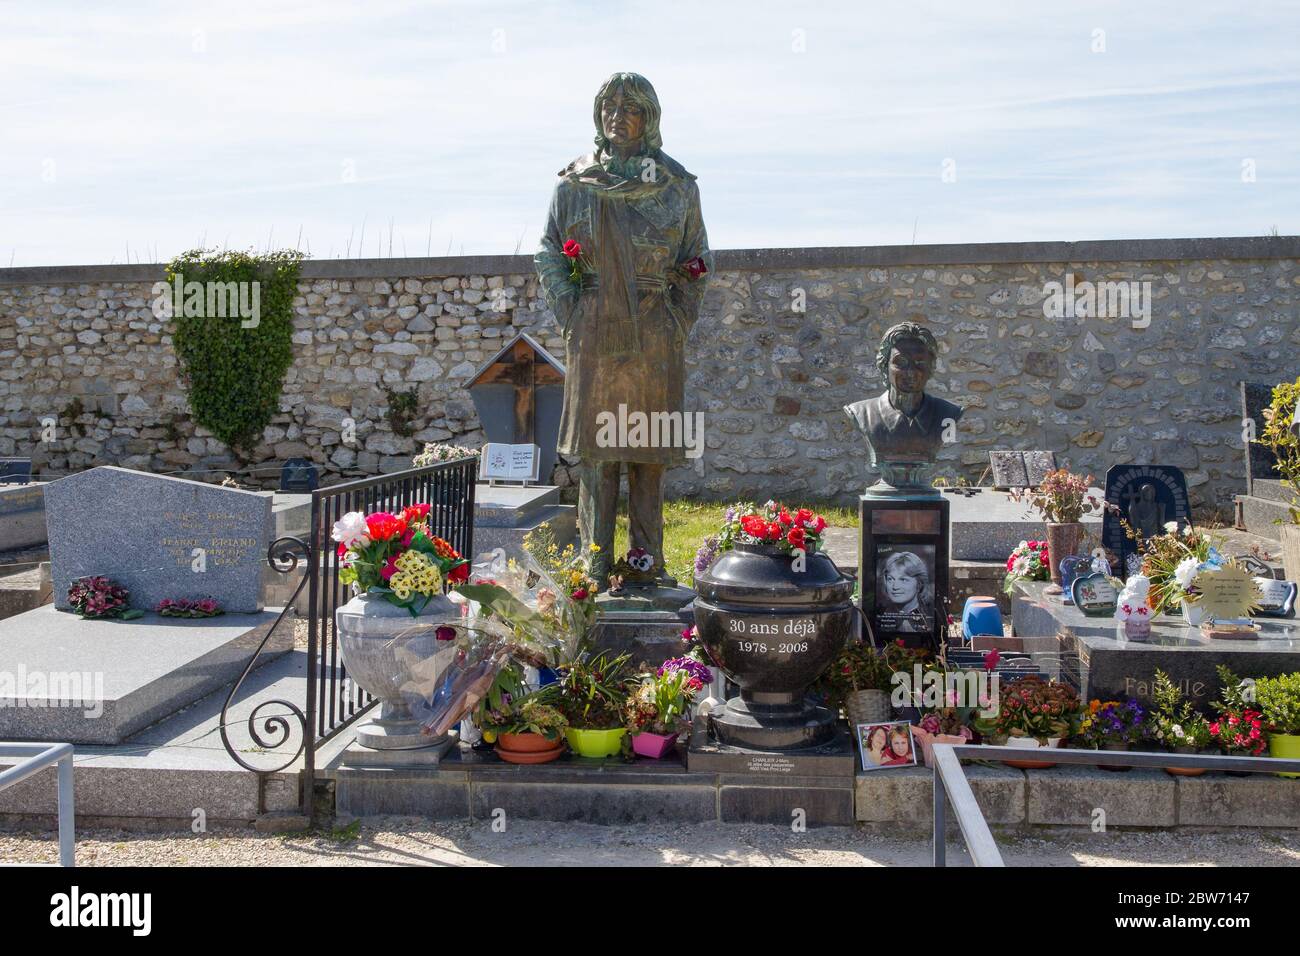 Tombe du chanteur Claude François dans le cimetière d'Annemois Annemois France 05/05/2016 Banque D'Images